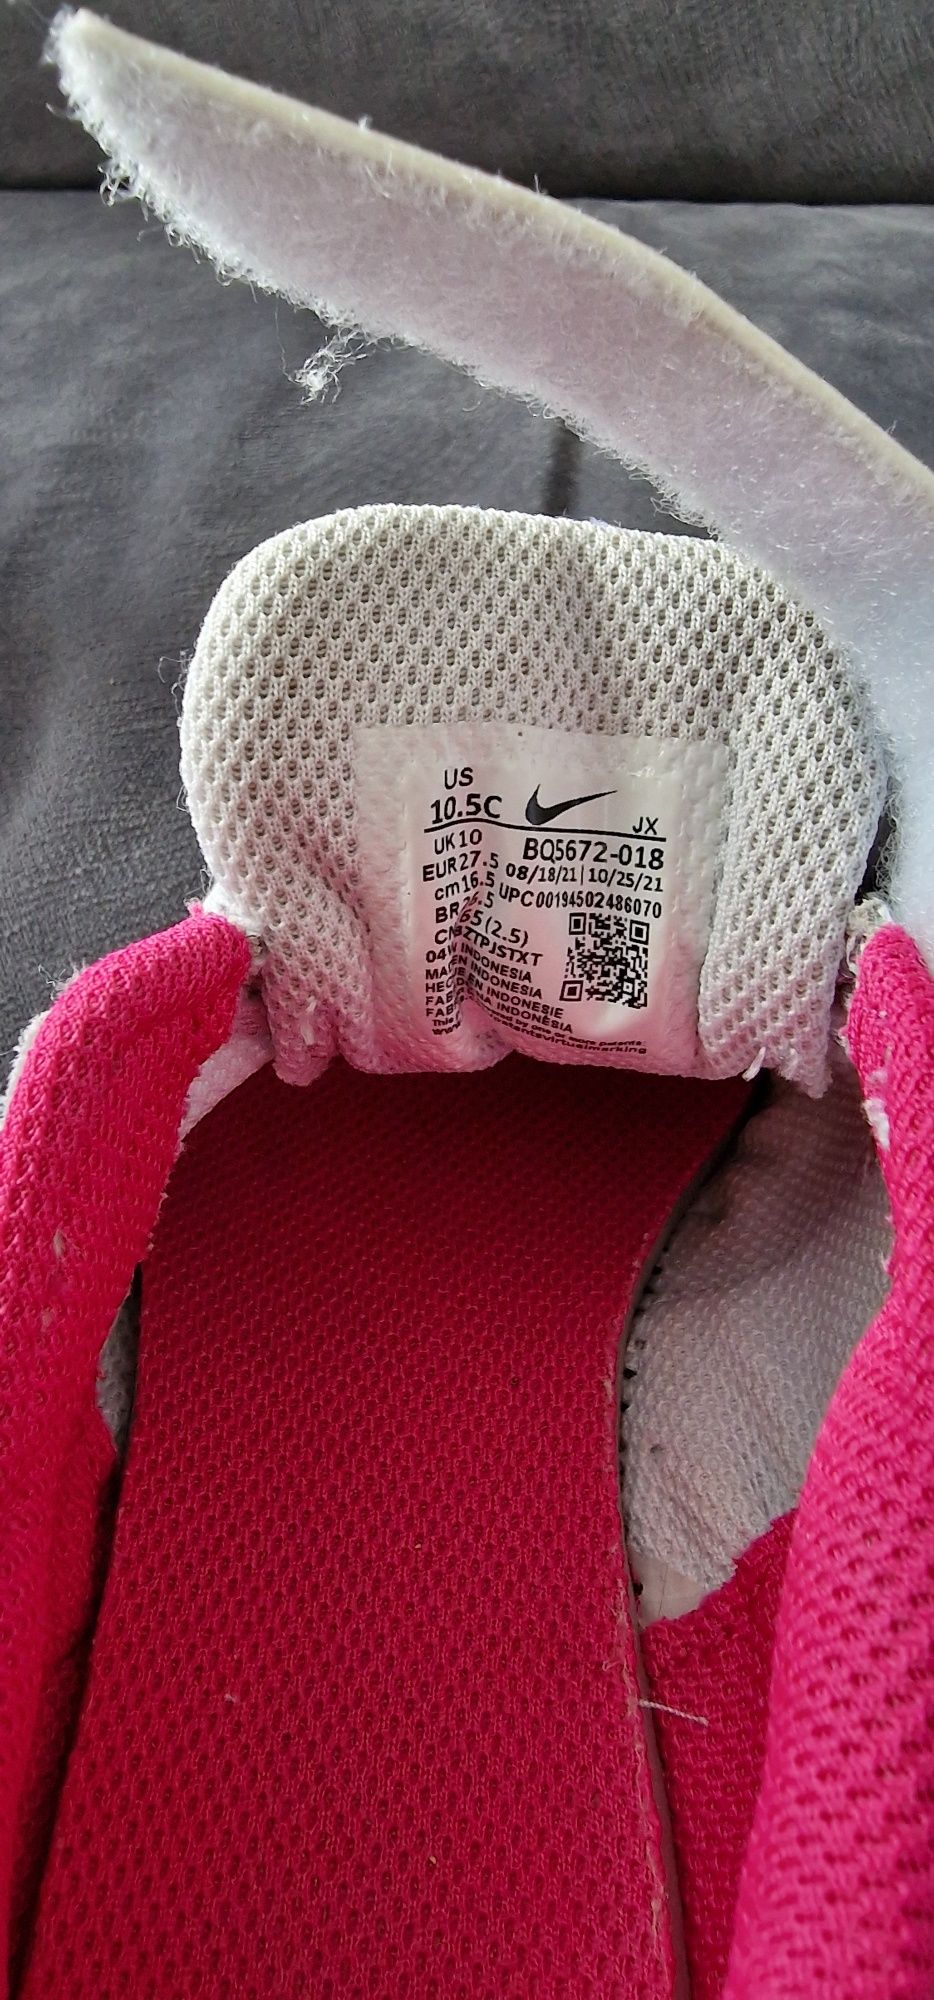 Buty sportowe adidasy Nike dziecięce sportowe roz. 10.5 eu 27.5 cm16.5